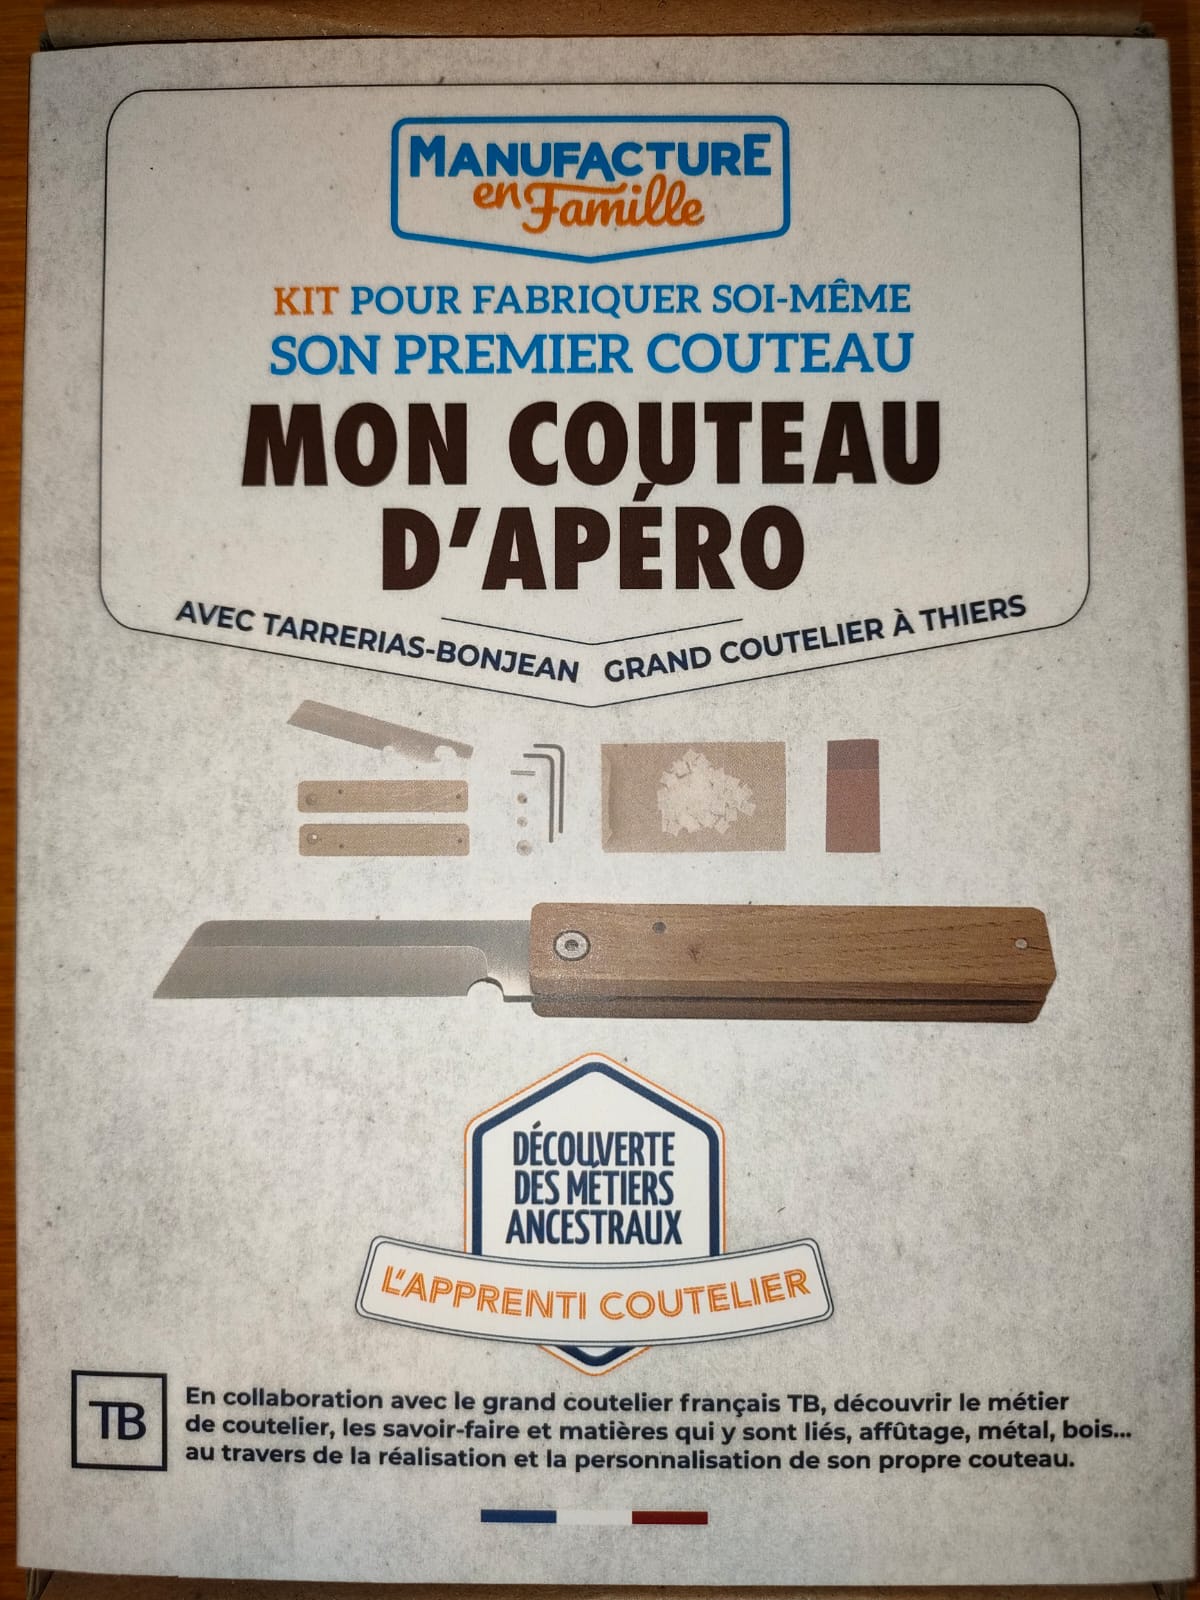 Mon couteau d'apéro - Made in France - Manufacture en famille